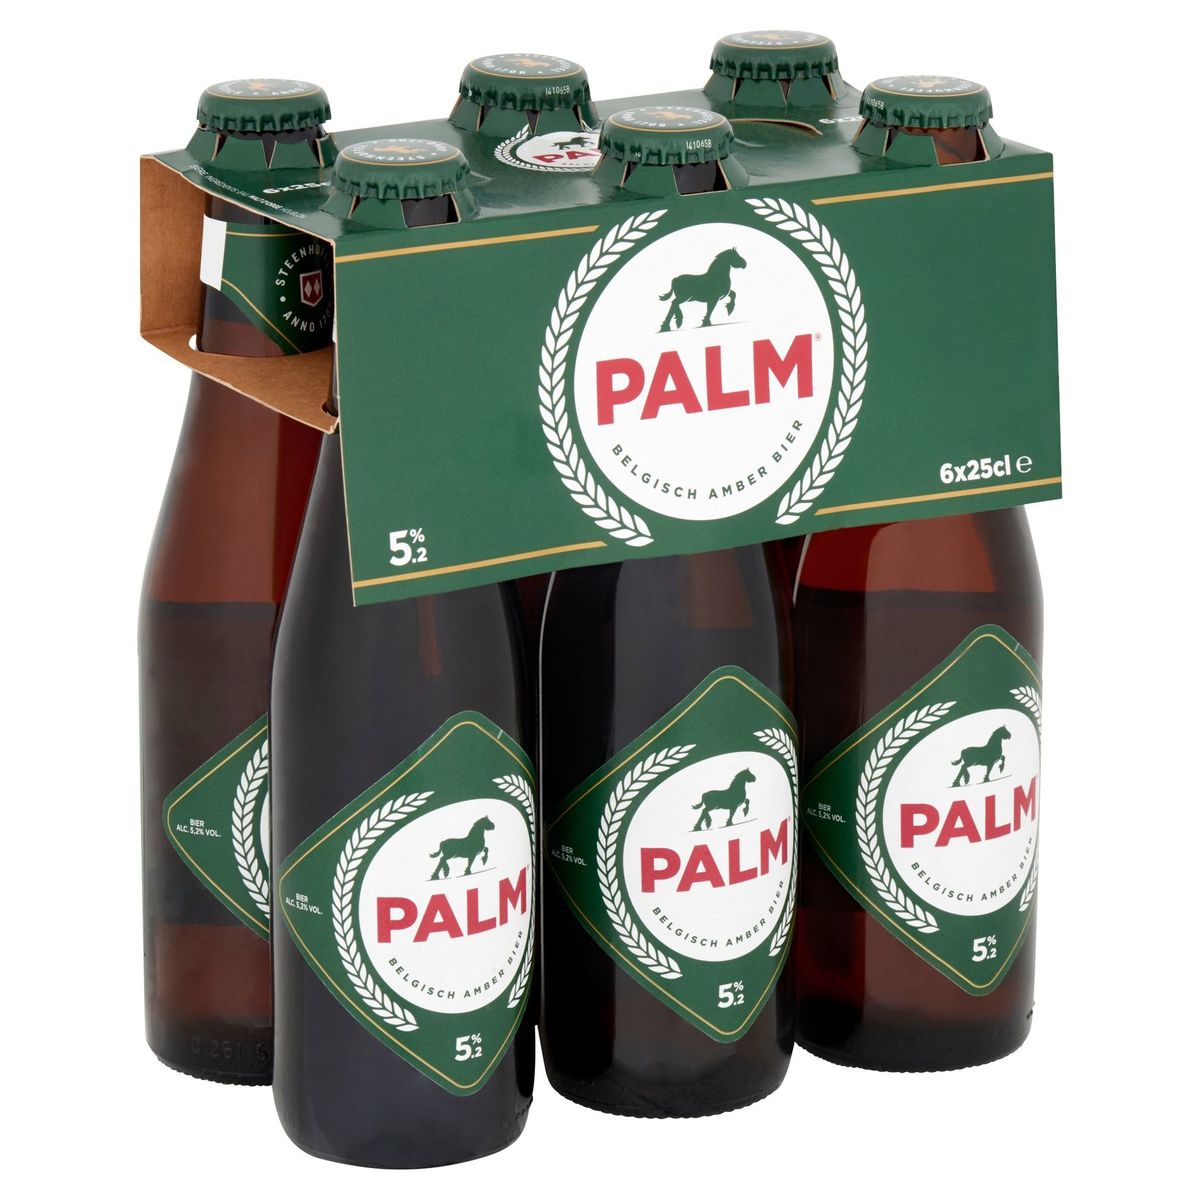 Palm Belgisch Amber Bier Flessen 6 x 25 cl